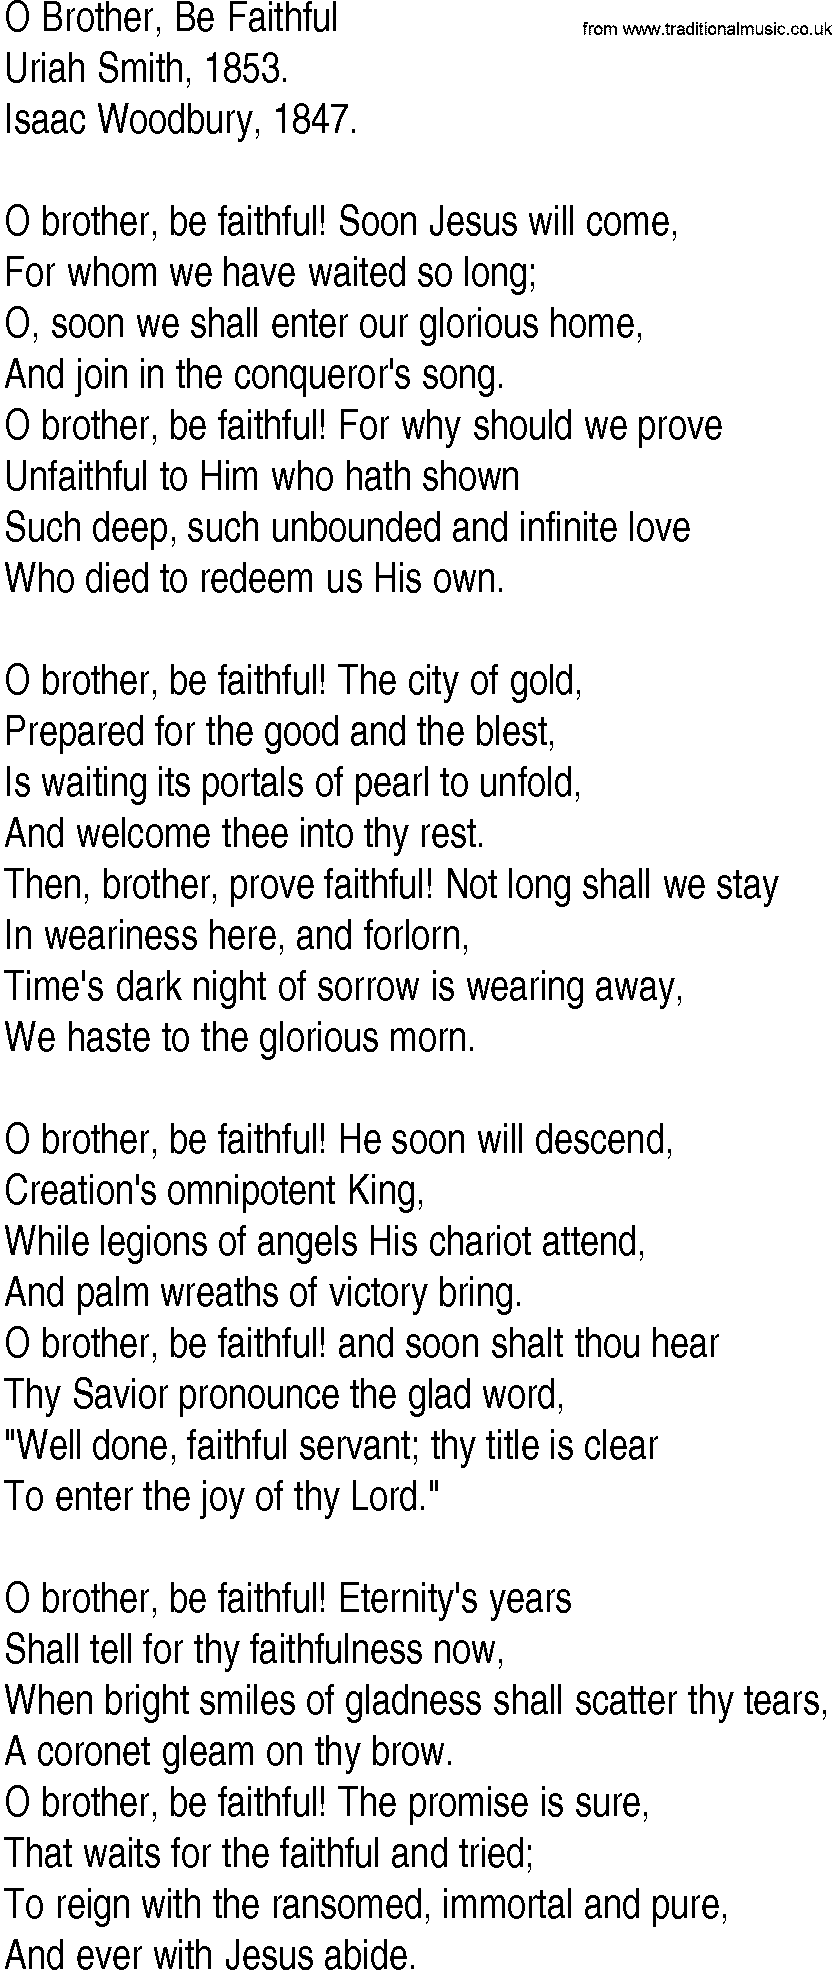 Hymn and Gospel Song: O Brother, Be Faithful by Uriah Smith lyrics